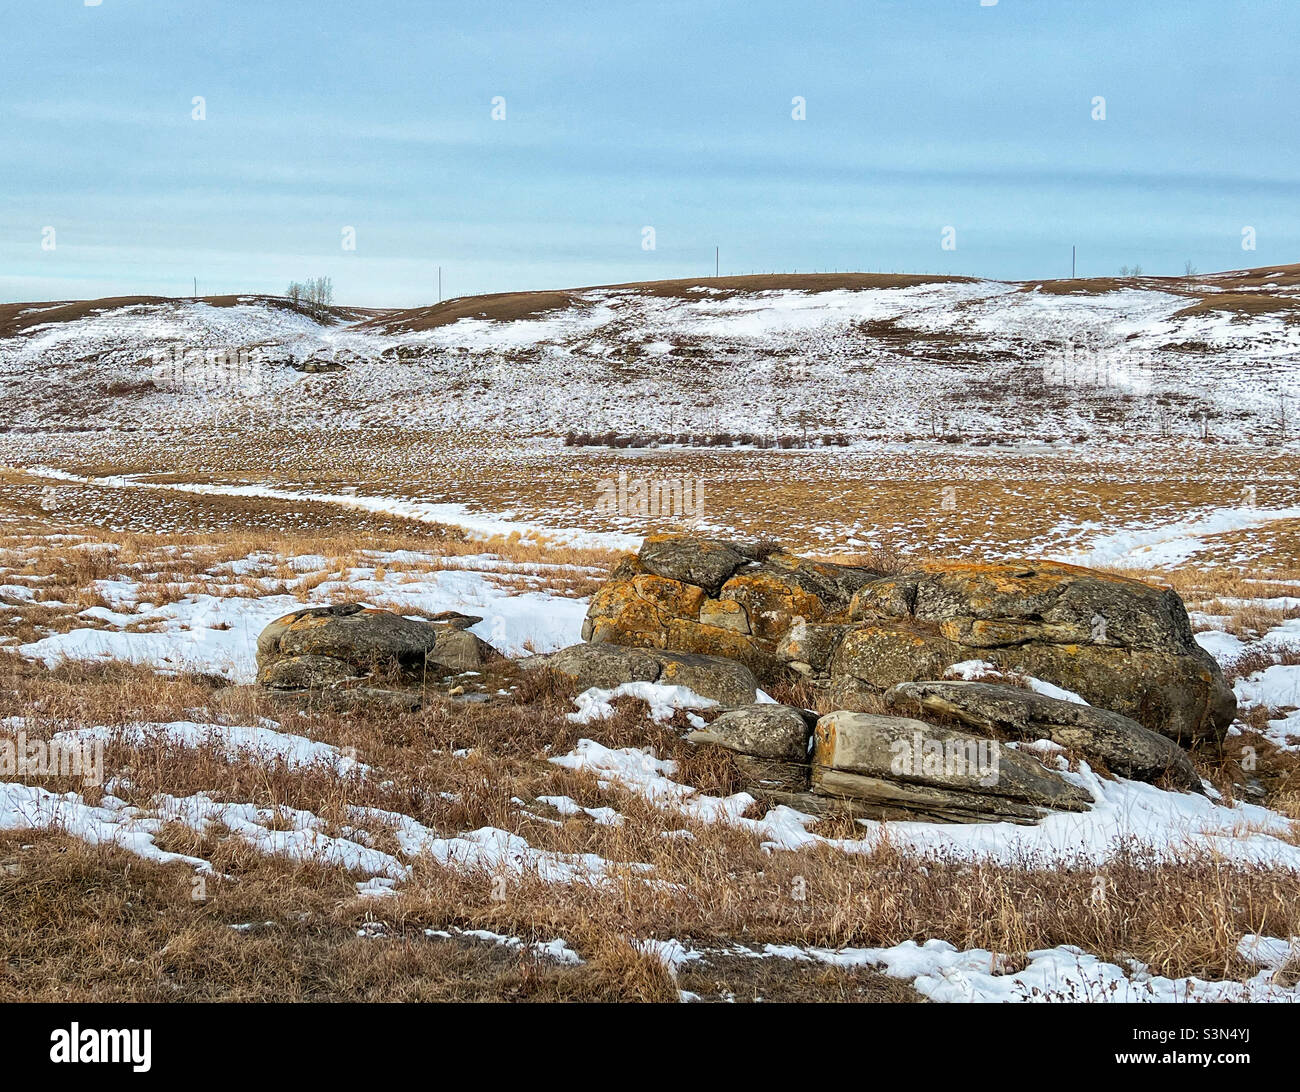 Paysage hivernal dans les contreforts, avec roche glaciaire erratique.Près de Calgary, Alberta, Canada. Banque D'Images